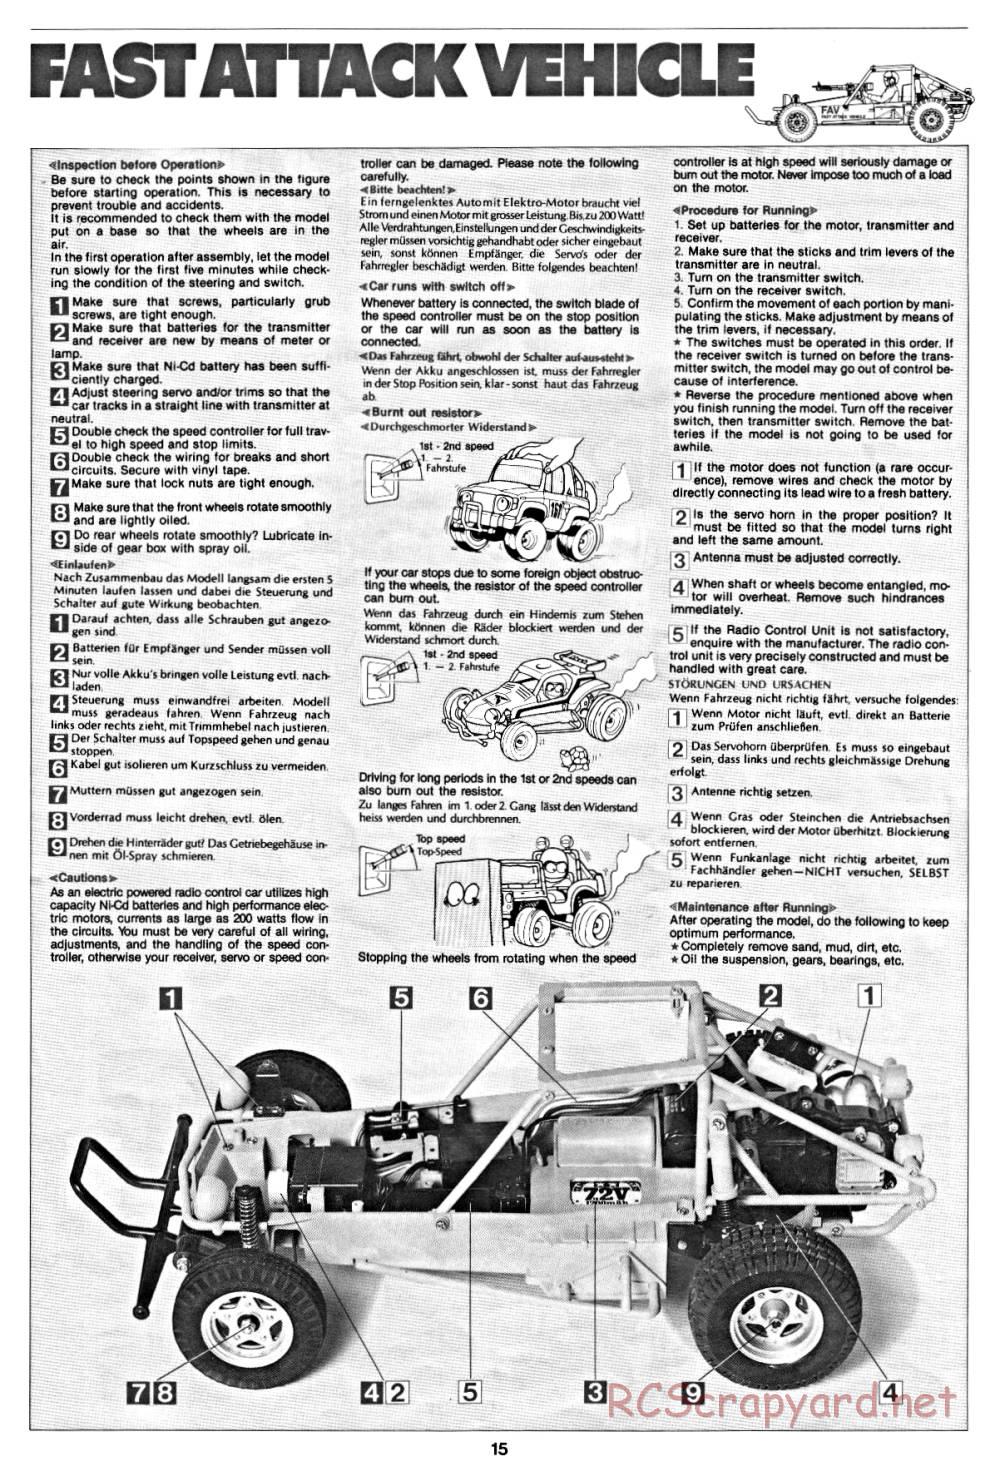 Tamiya - Fast Attack Vehicle - 58046 - Manual - Page 15